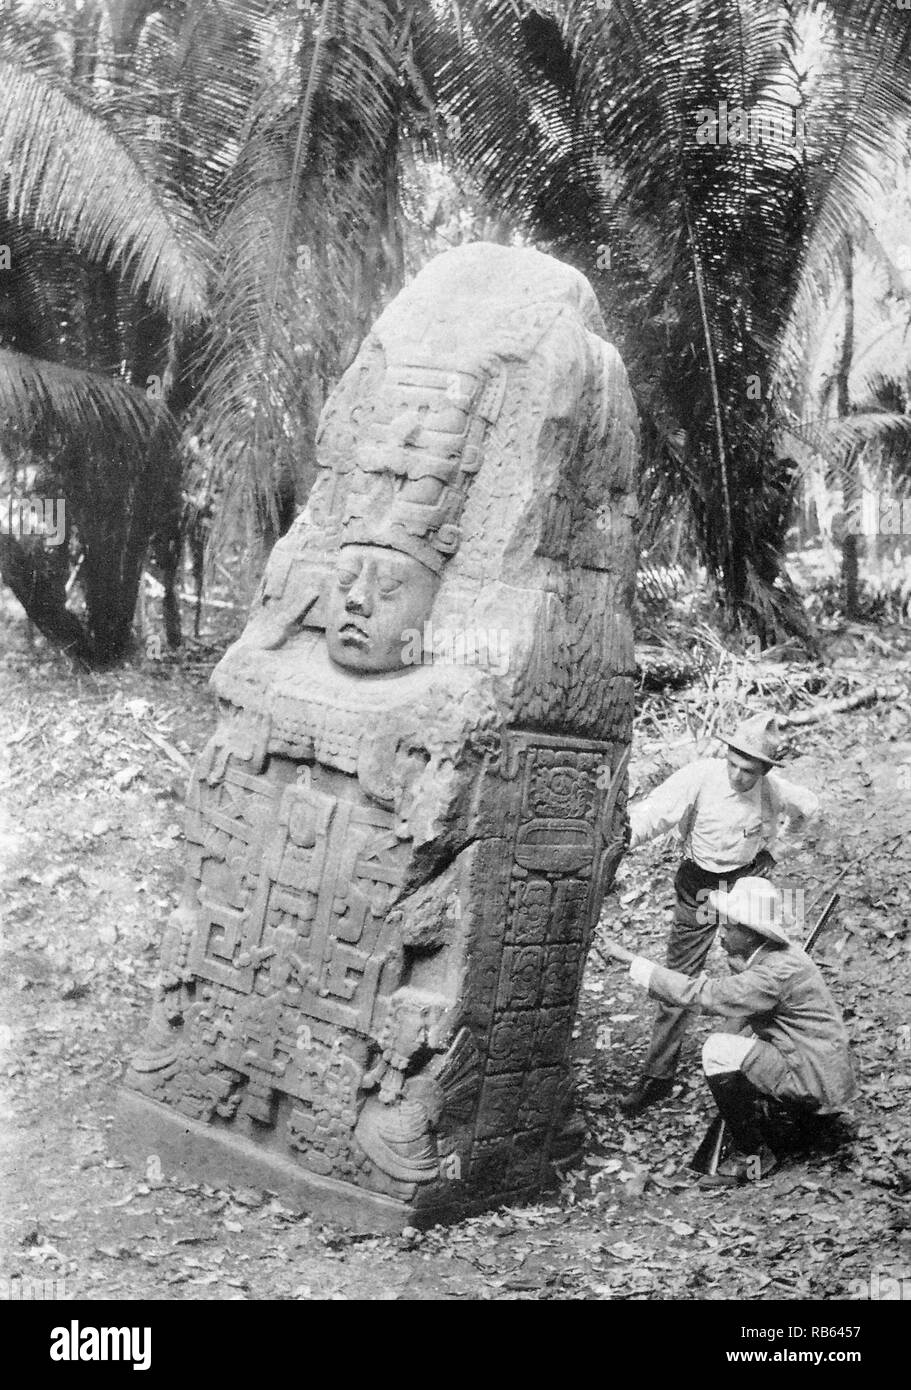 Photographie d'une stèle de Quirigua. Le Guatemala. La stèle pour la Reine de Quirigua. Sur les côtés sont considérés des hiéroglyphes semblables à celles des Mayas de manuscrits. En date du 900 Photograpgh 1915 AD (en date du). Banque D'Images